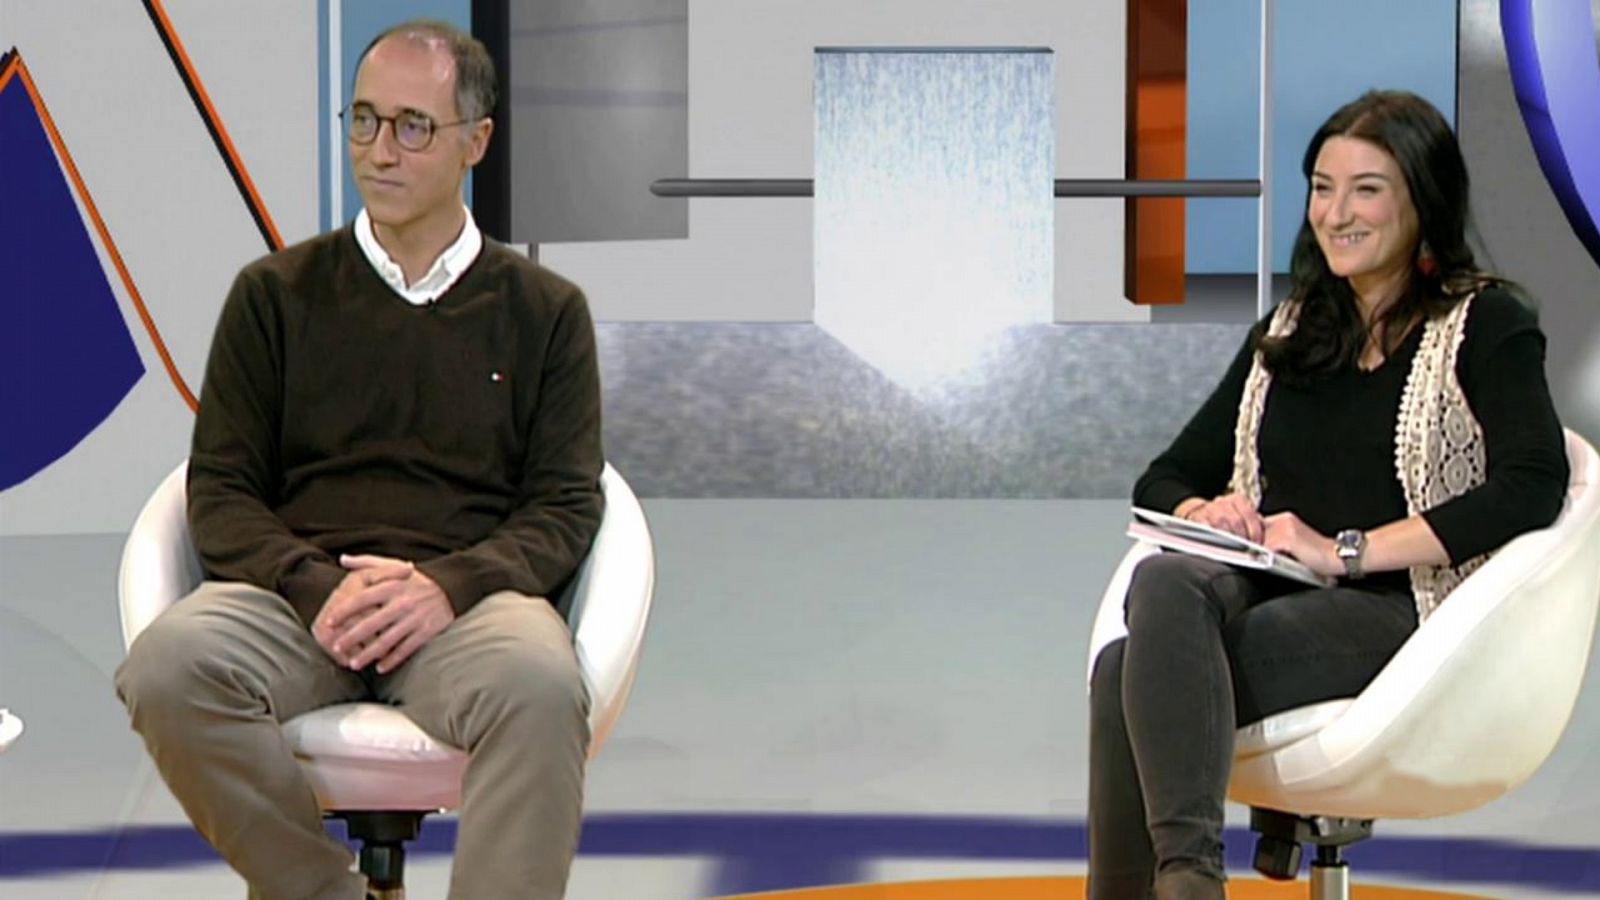 Últimas preguntas - Rezando vamos - RTVE.es